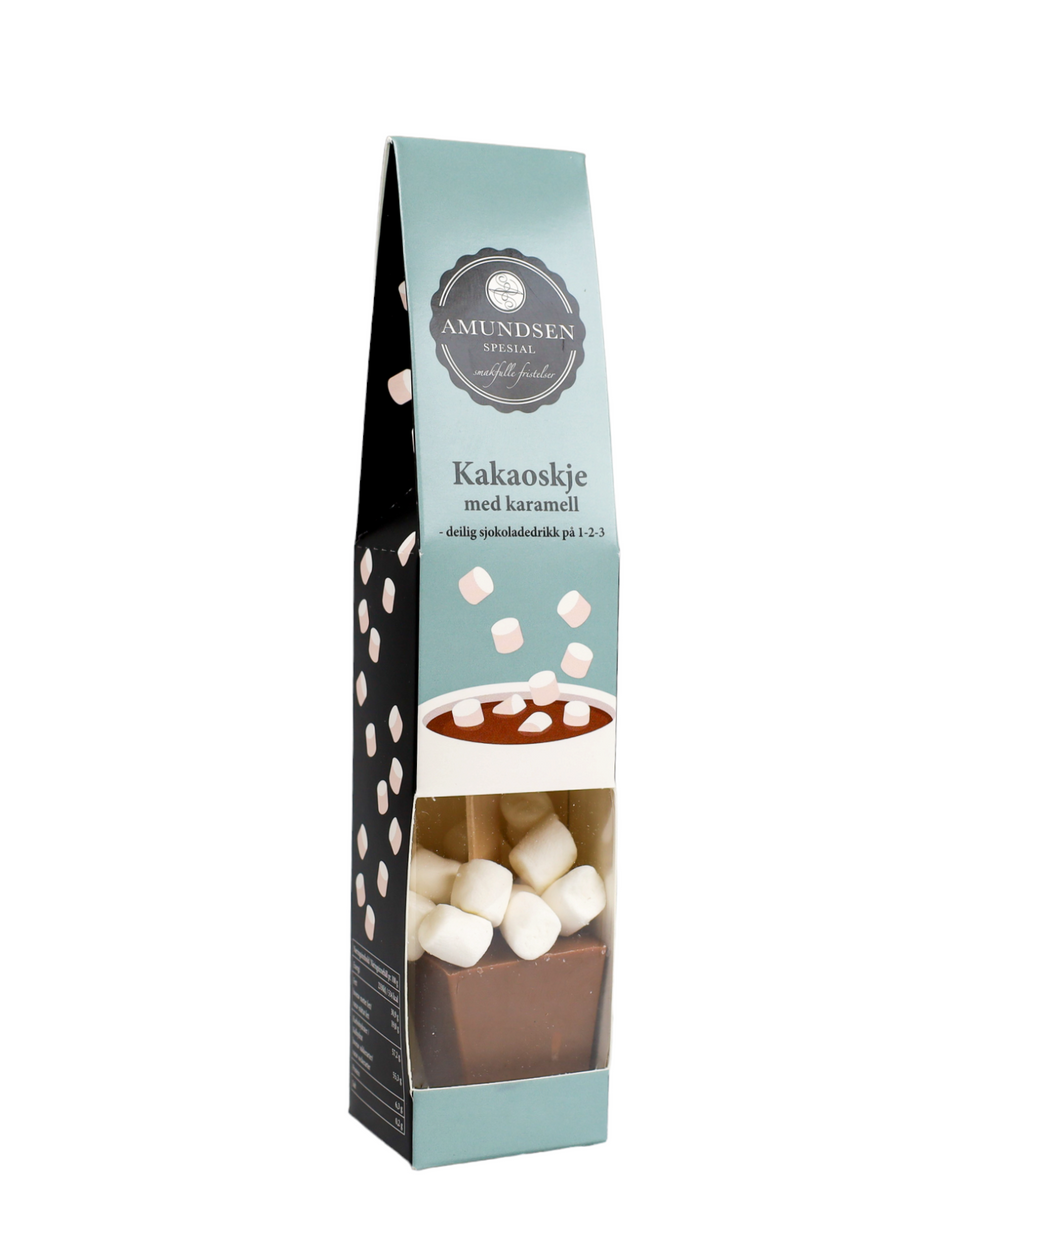 Kakaoskje - karamell, med mini marshmallows